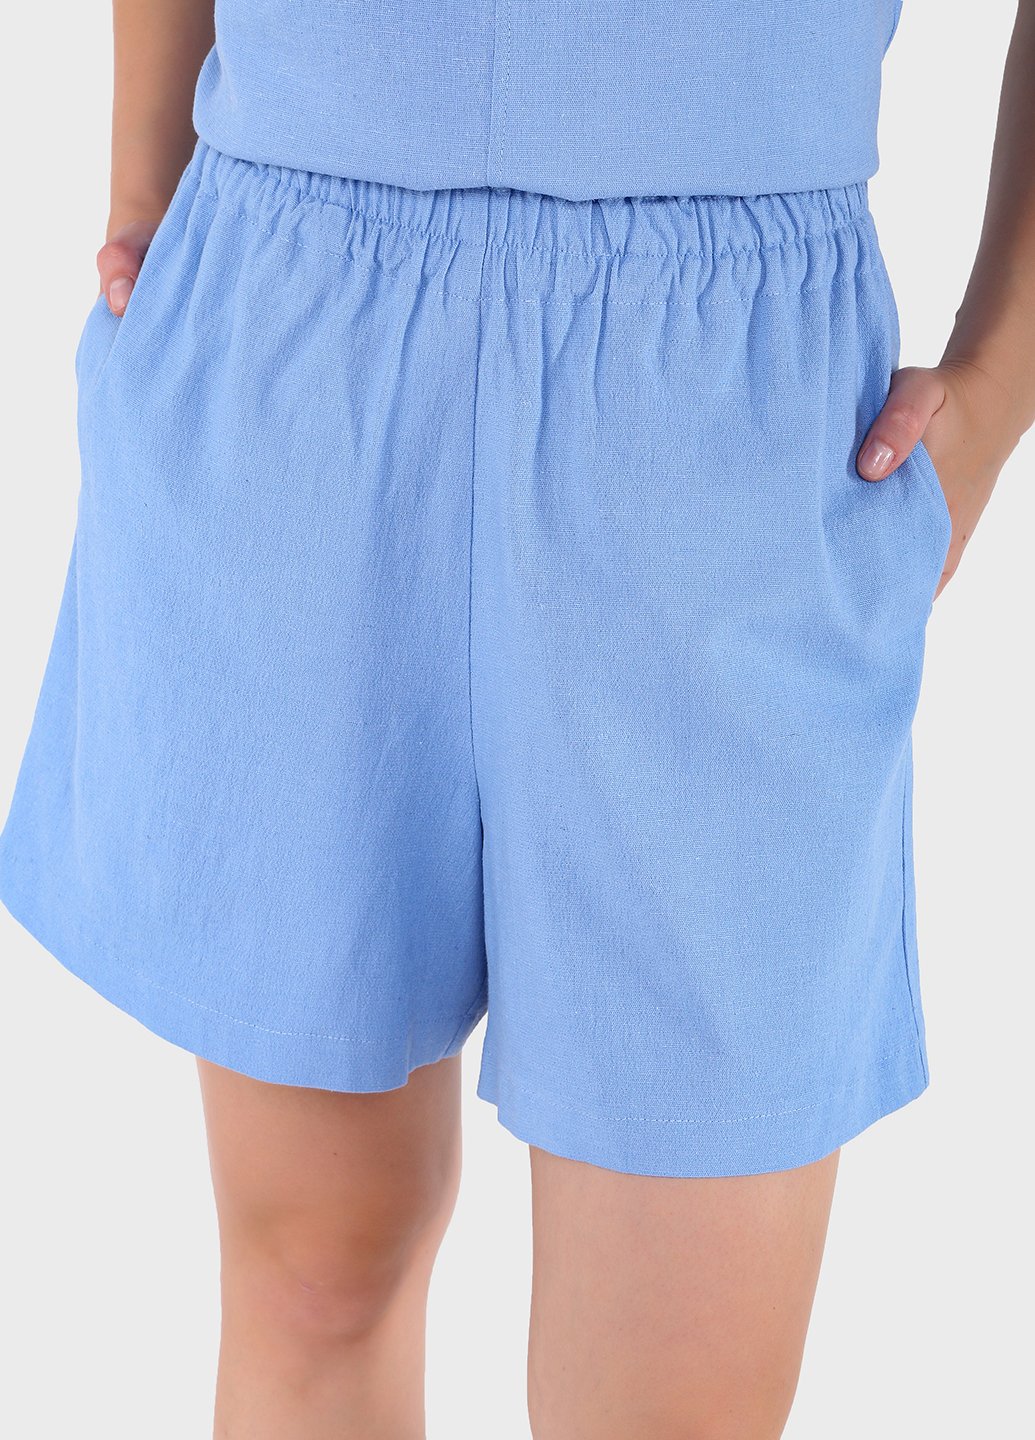 Купить Льняные шорты женские бермуды голубого цвета Merlini Турин 300000048, размер 42-44 в интернет-магазине